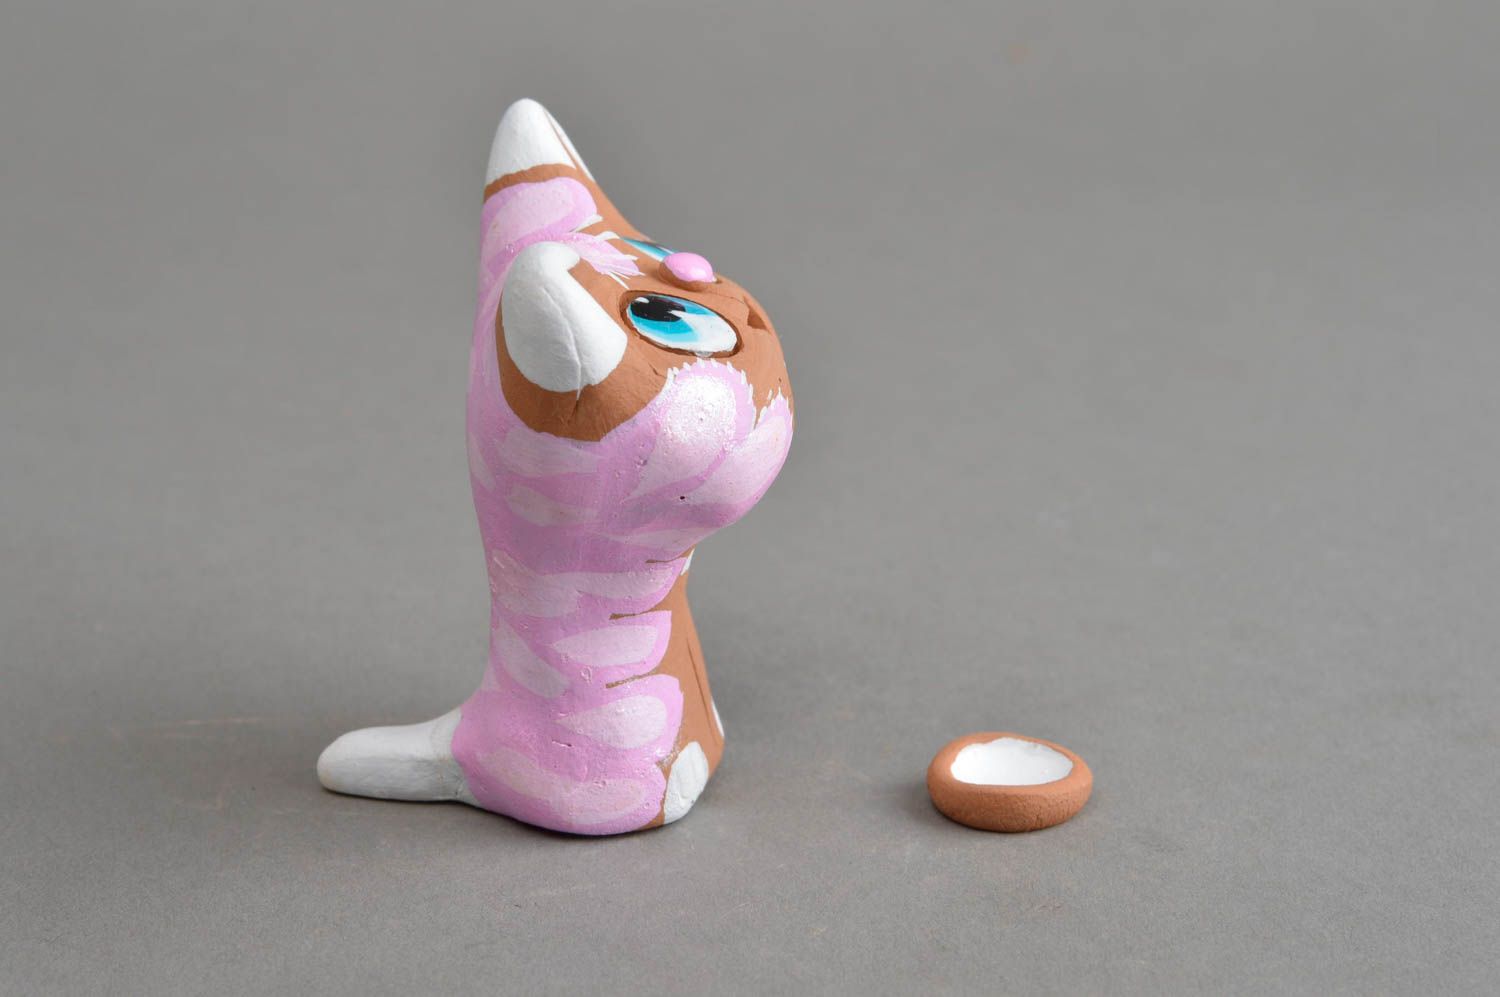 Глиняный расписанный сувенир-статуэтка ручной работы кошка с розовой холкой фото 3